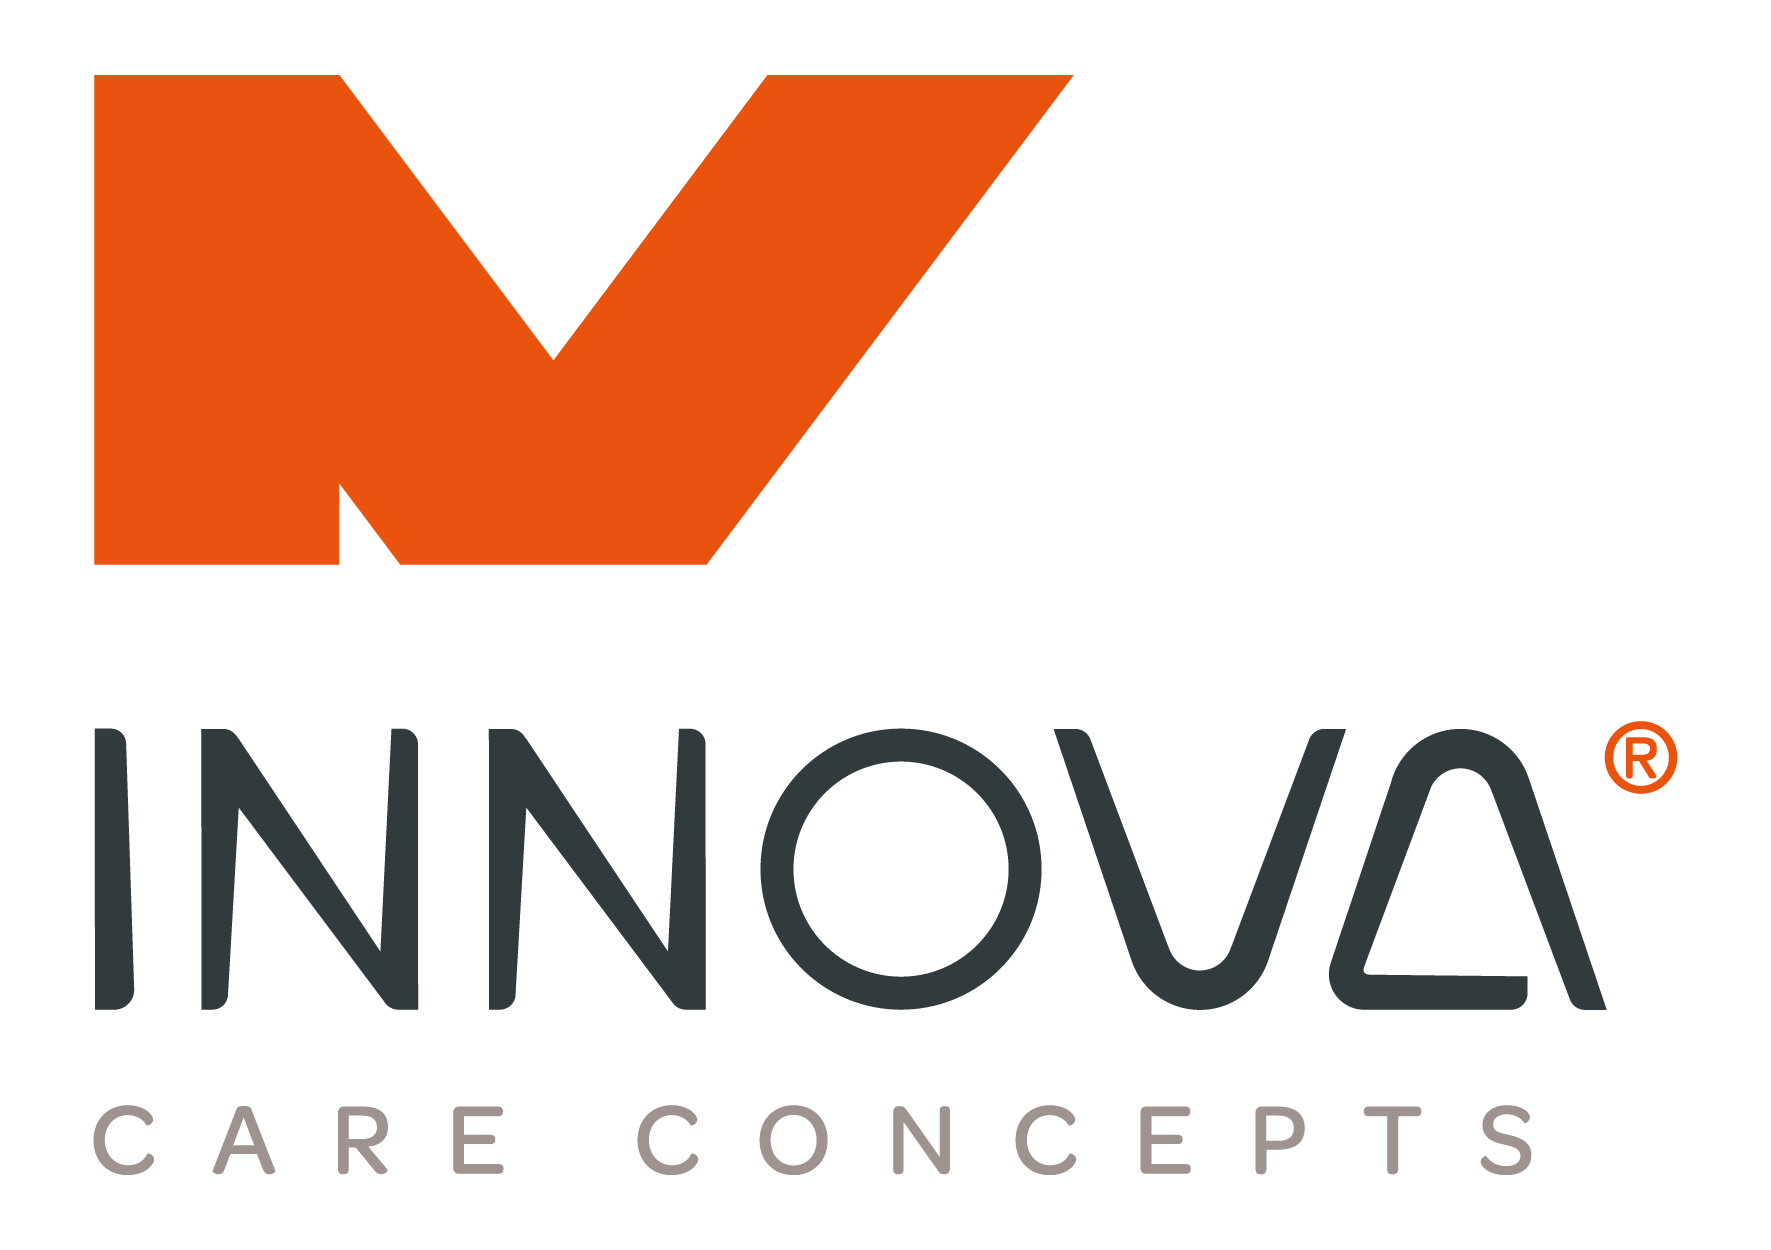 Innova Care Concepts Ltd